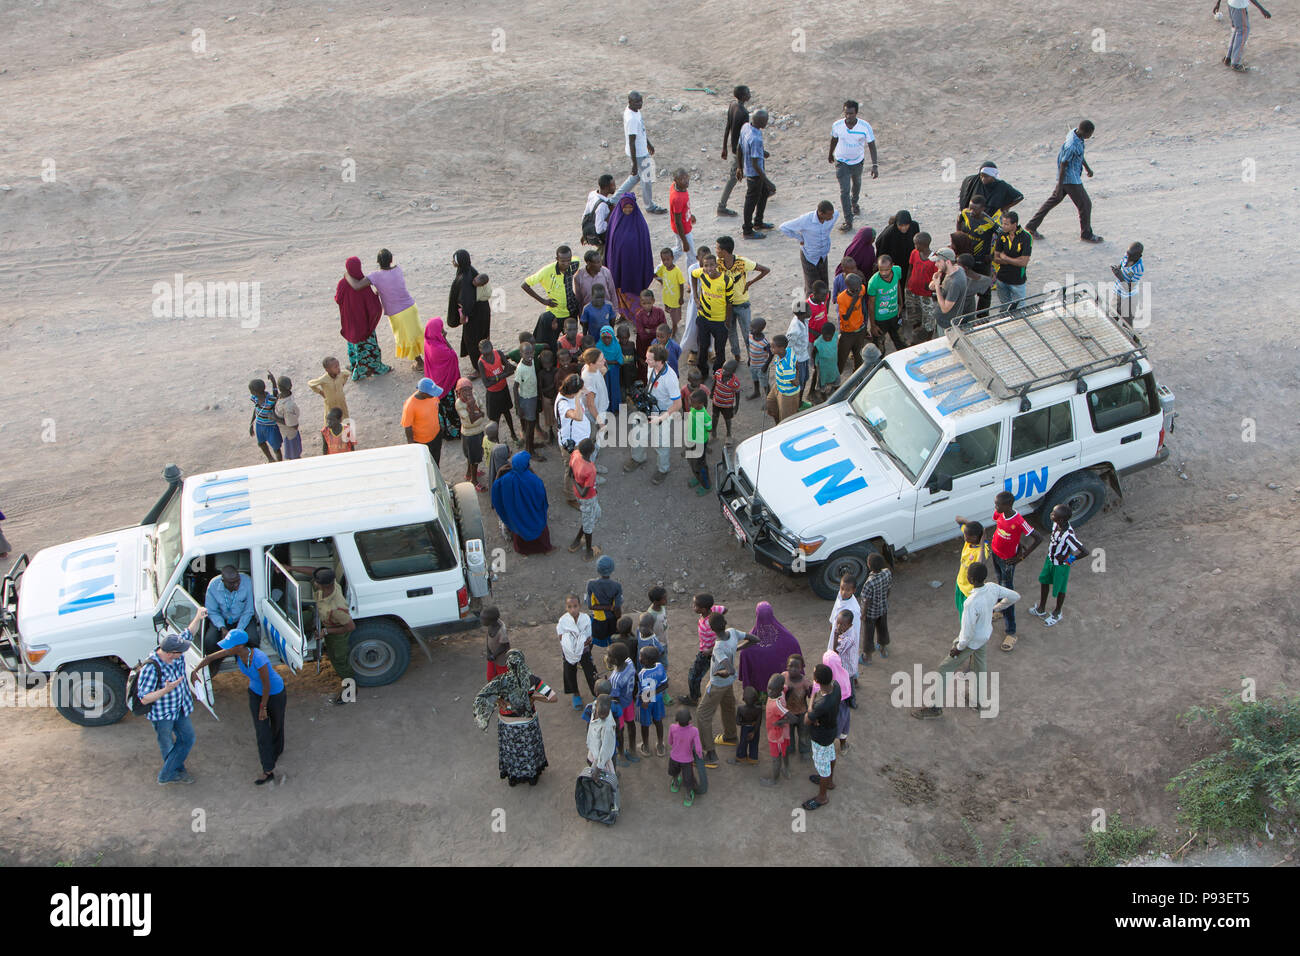 Kakuma, Kenia - Ansammlung von Flüchtlingen um zwei UN-Land Rover in Kakuma Flüchtlingslager. Stockfoto